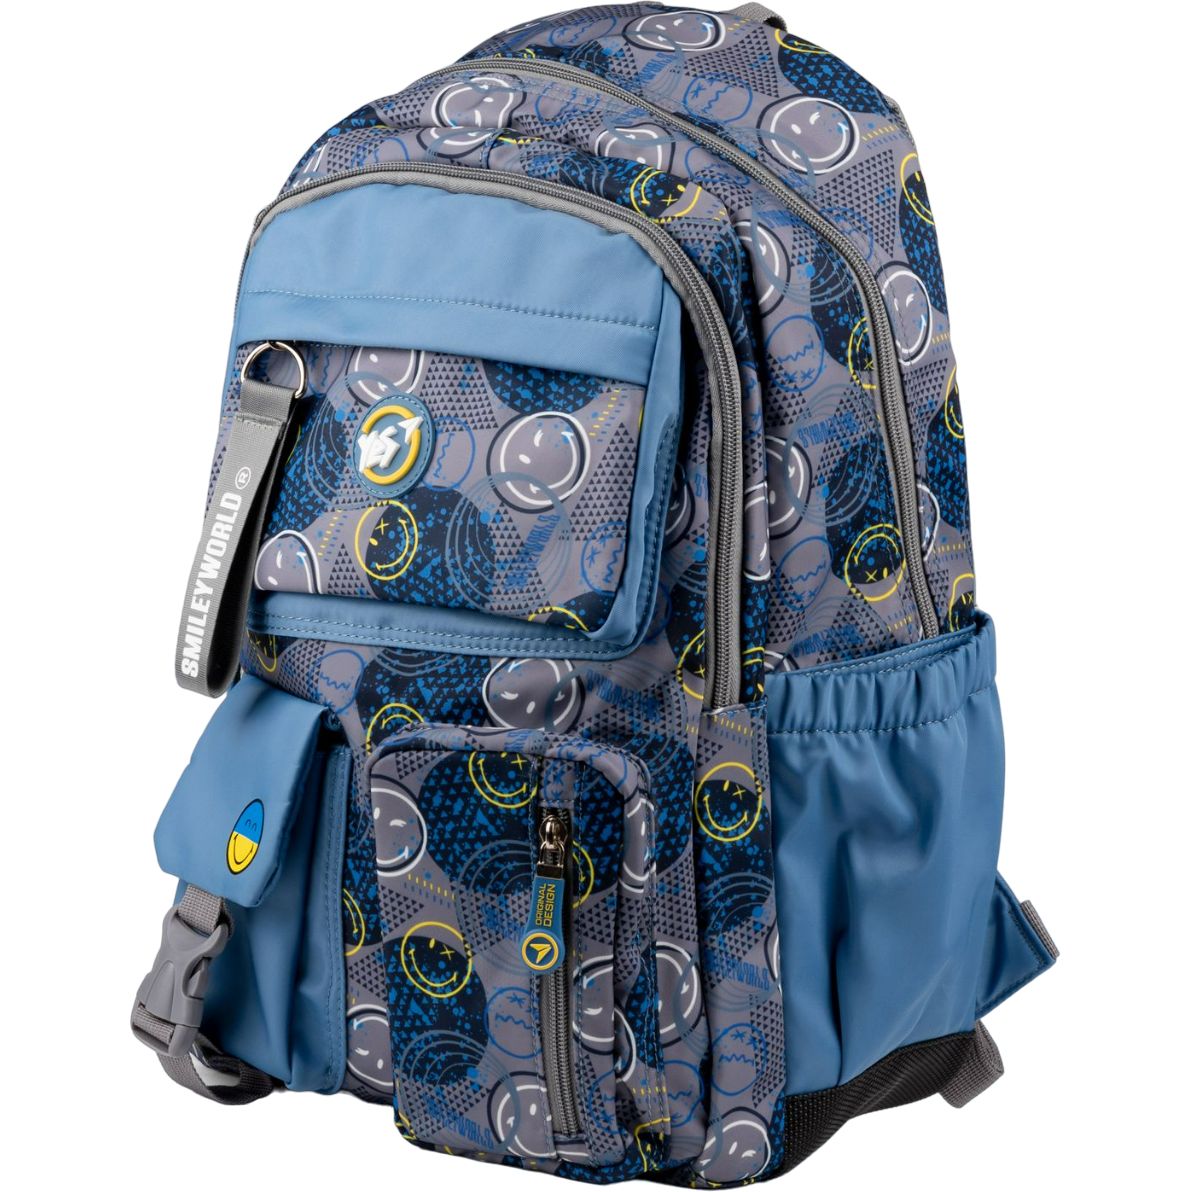 Рюкзак Yes TS-43 Smiley World, серый с голубым (559540) - фото 1